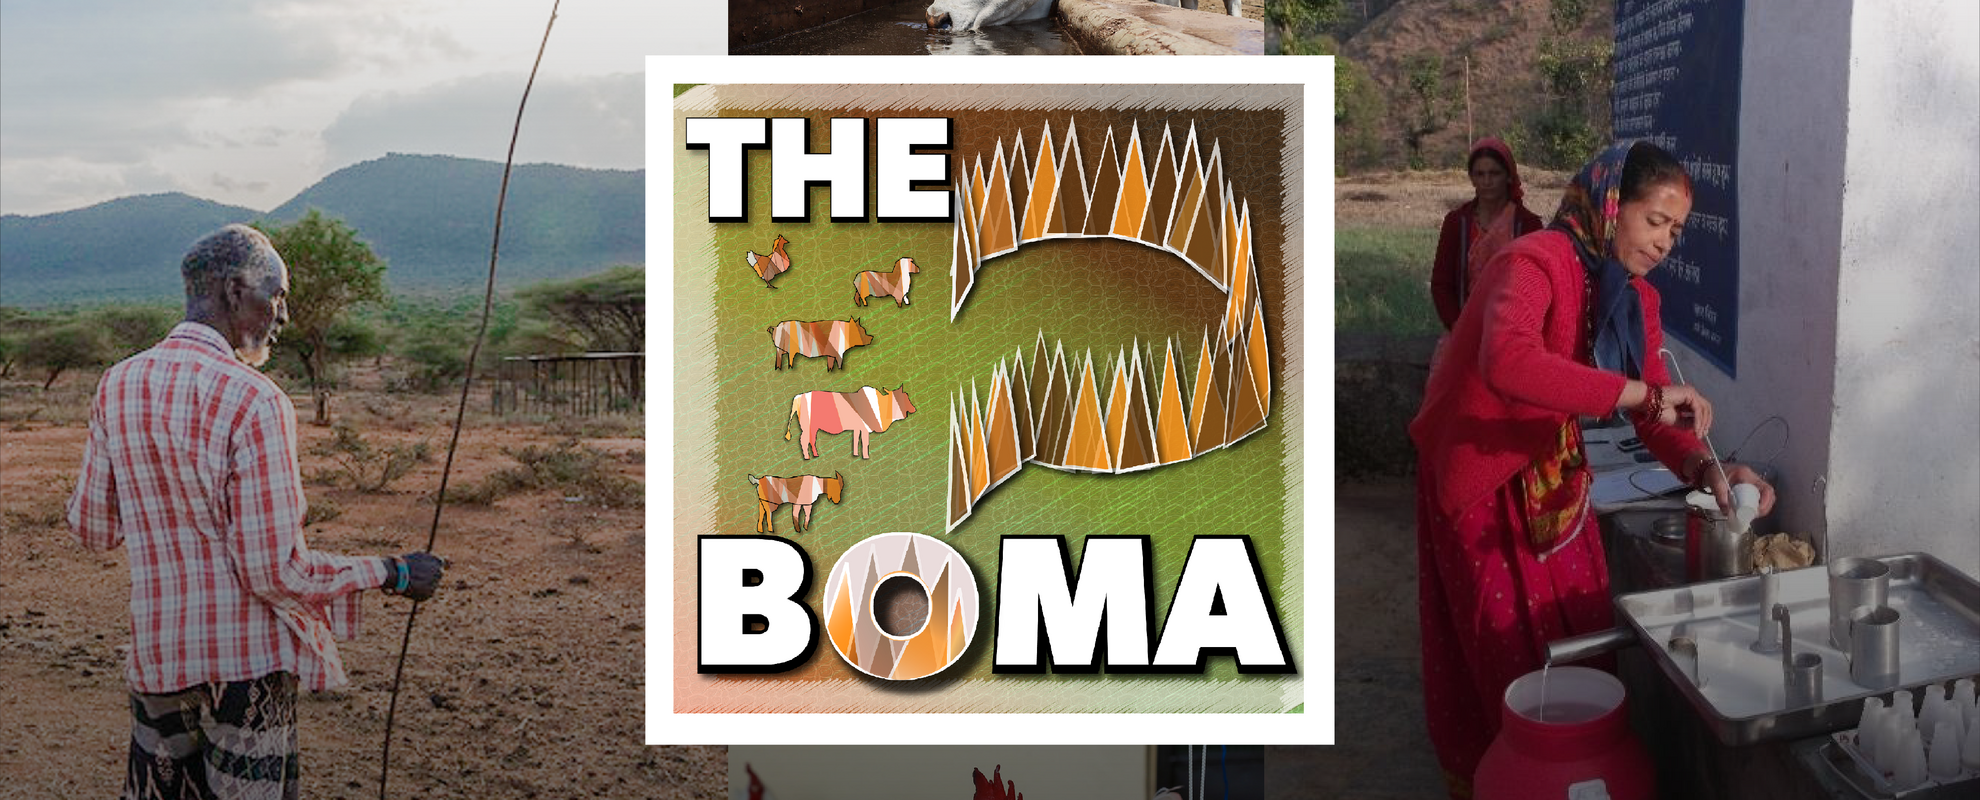 The Boma logo